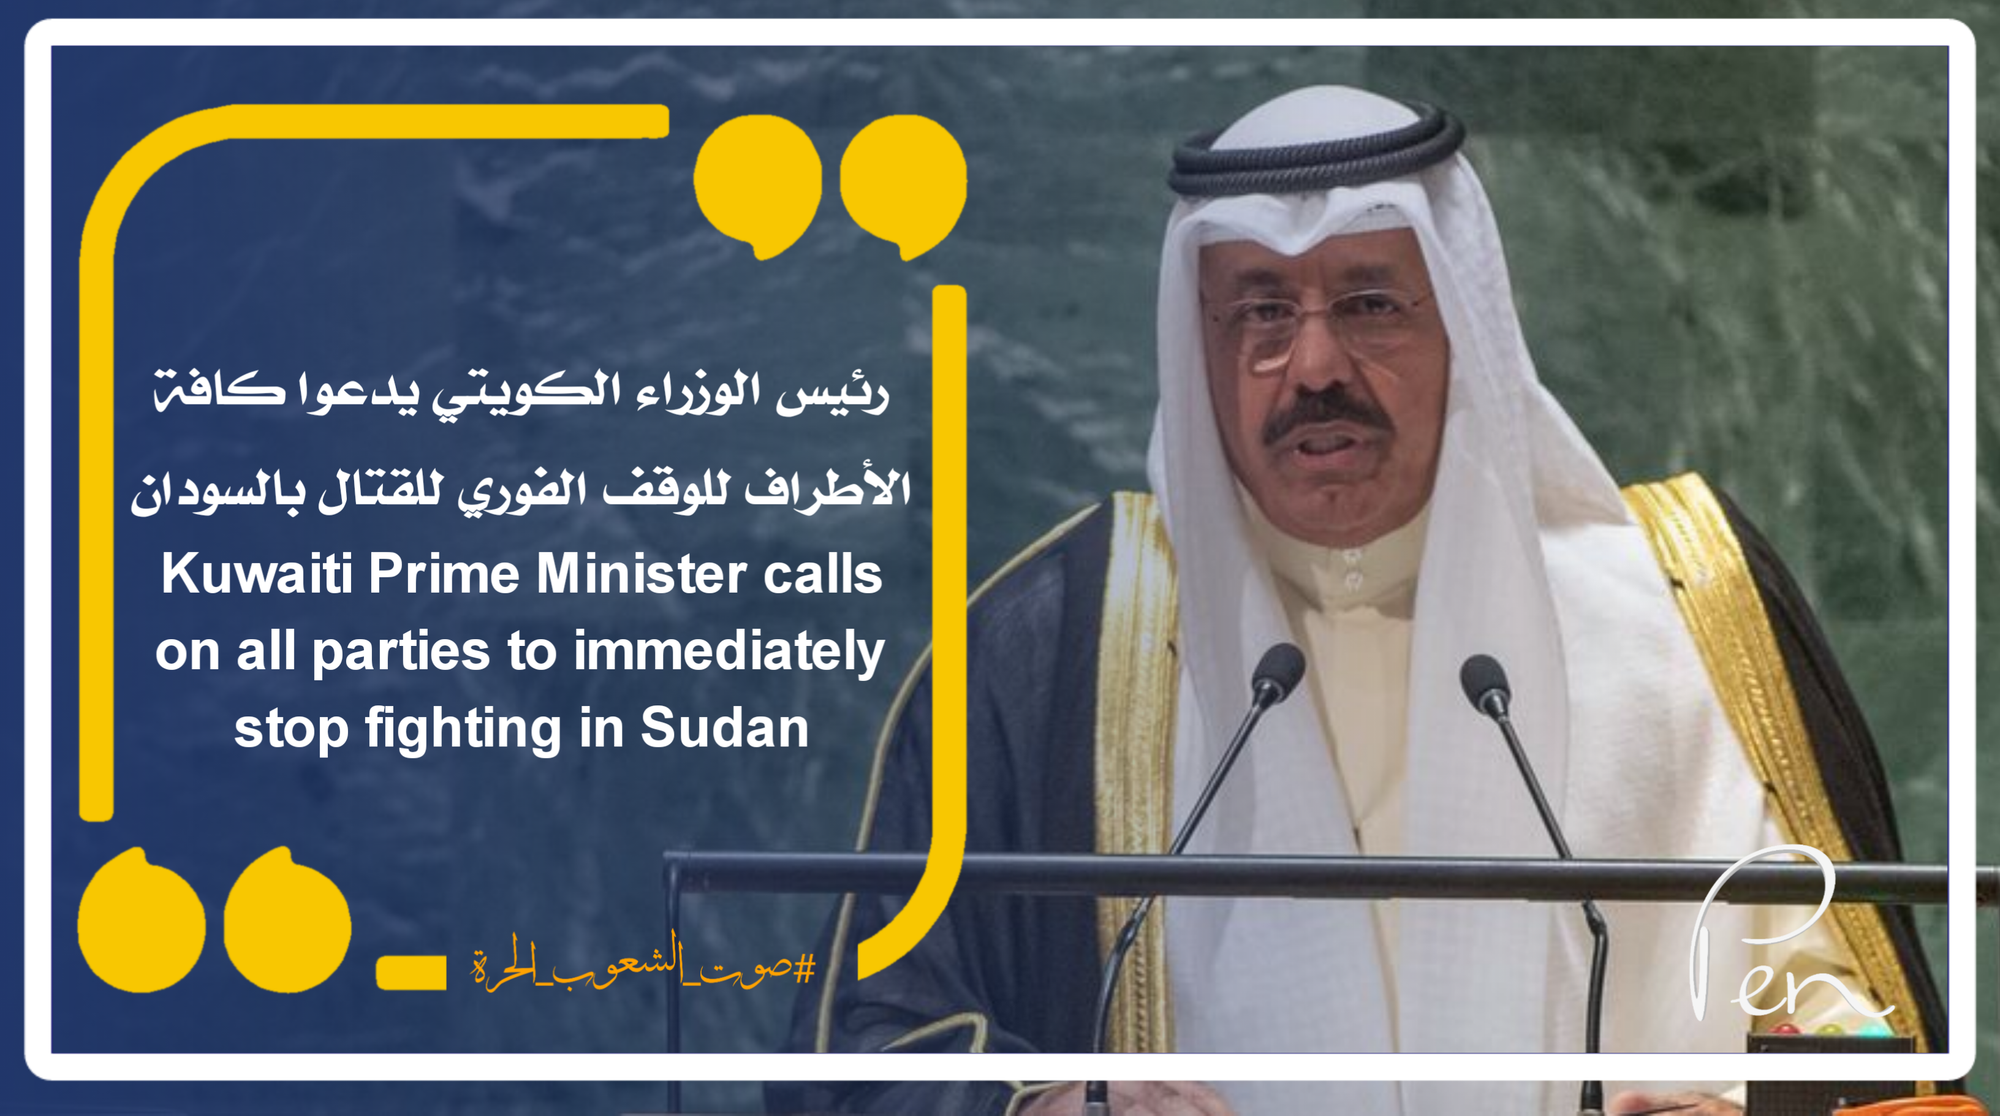 رئيس الوزراء الكويتي يدعوا كافة الأطراف للوقف الفوري للقتال بالسودان